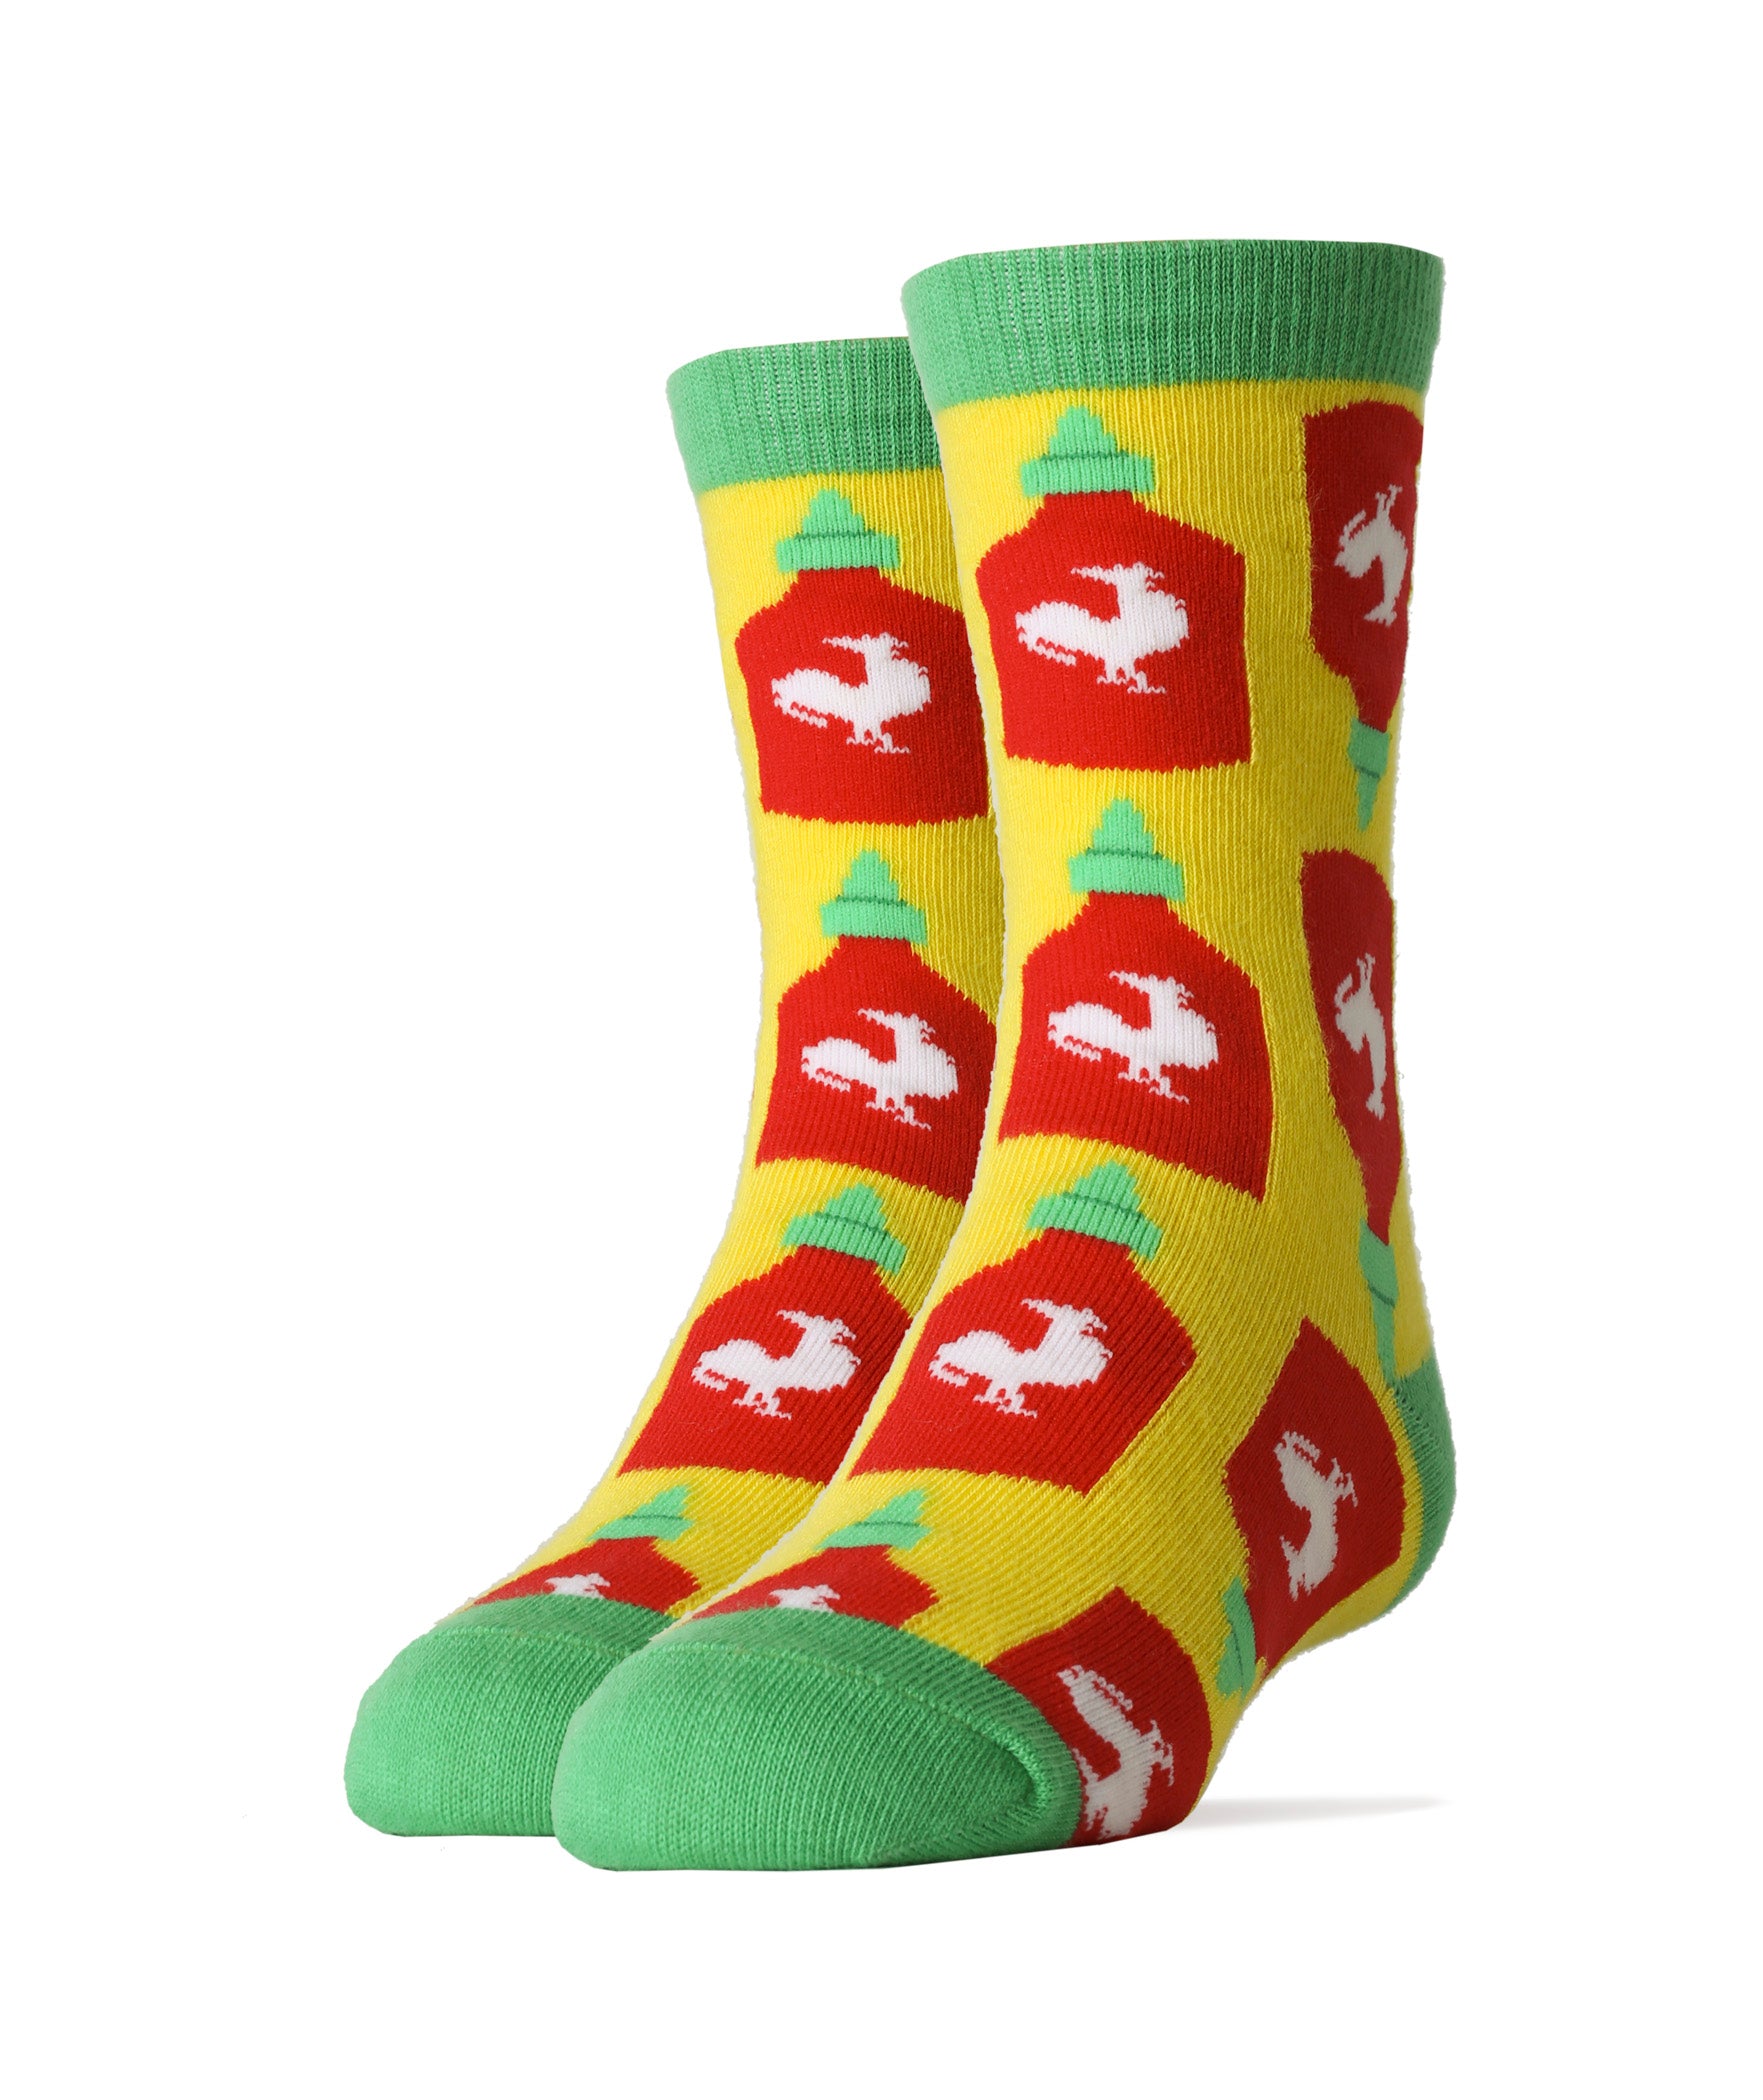 Holy Sriracha! Socks | Novelty Crew Socks for Kids